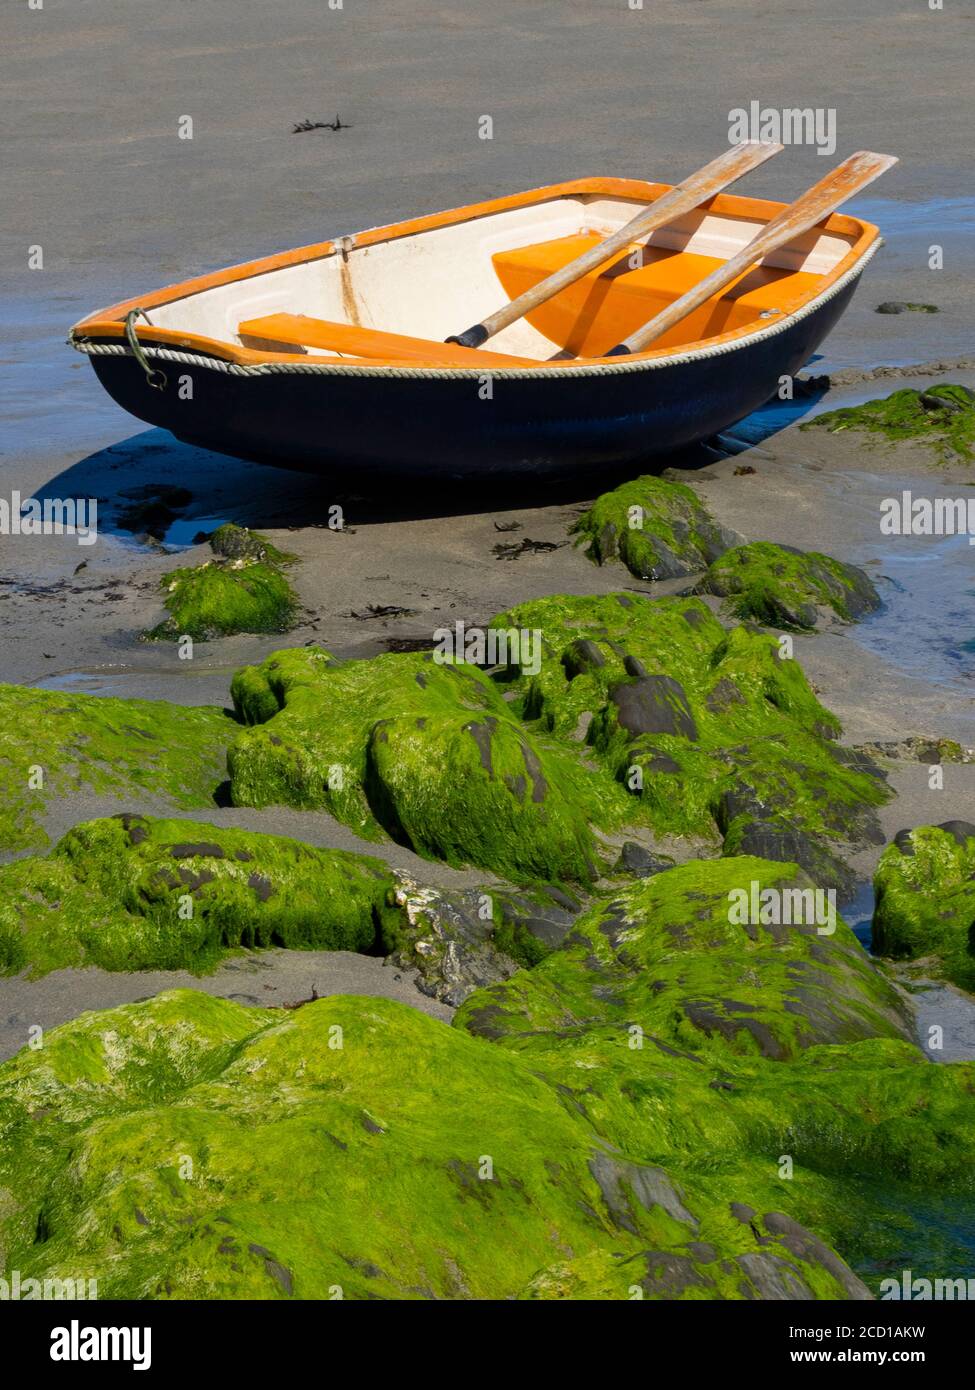 Orange rowing boat on the sand, Portscatho, Cornwall, UK Stock Photo